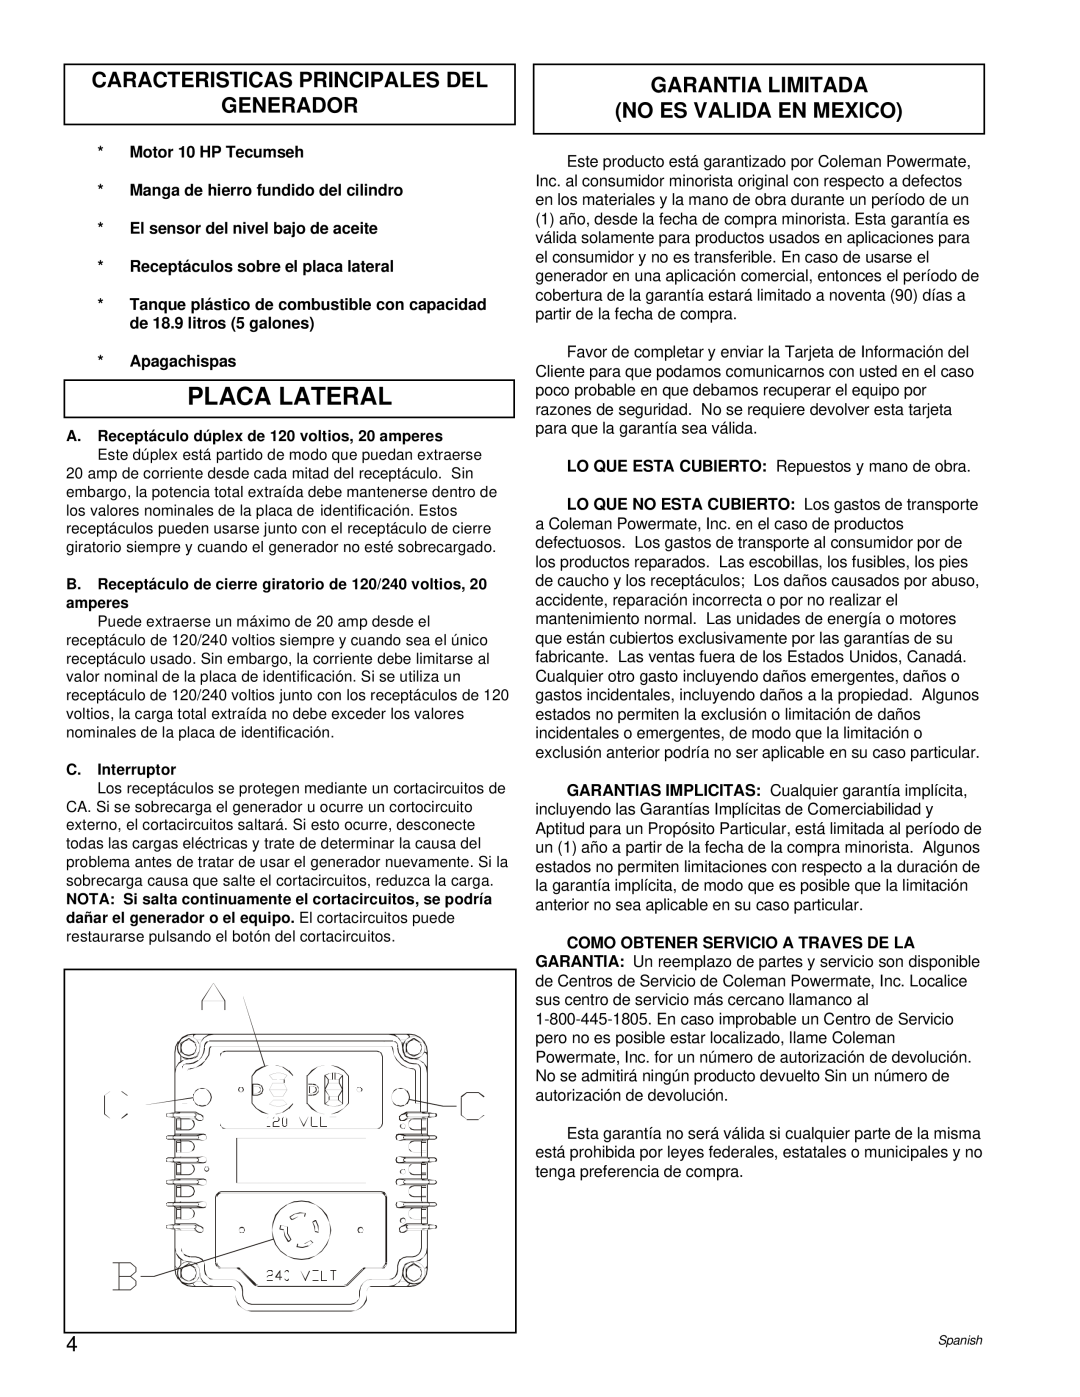 Powermate PL0525202.02 Placa Lateral, Caracteristicas Principales Del Generador, Garantia Limitada No Es Valida En Mexico 